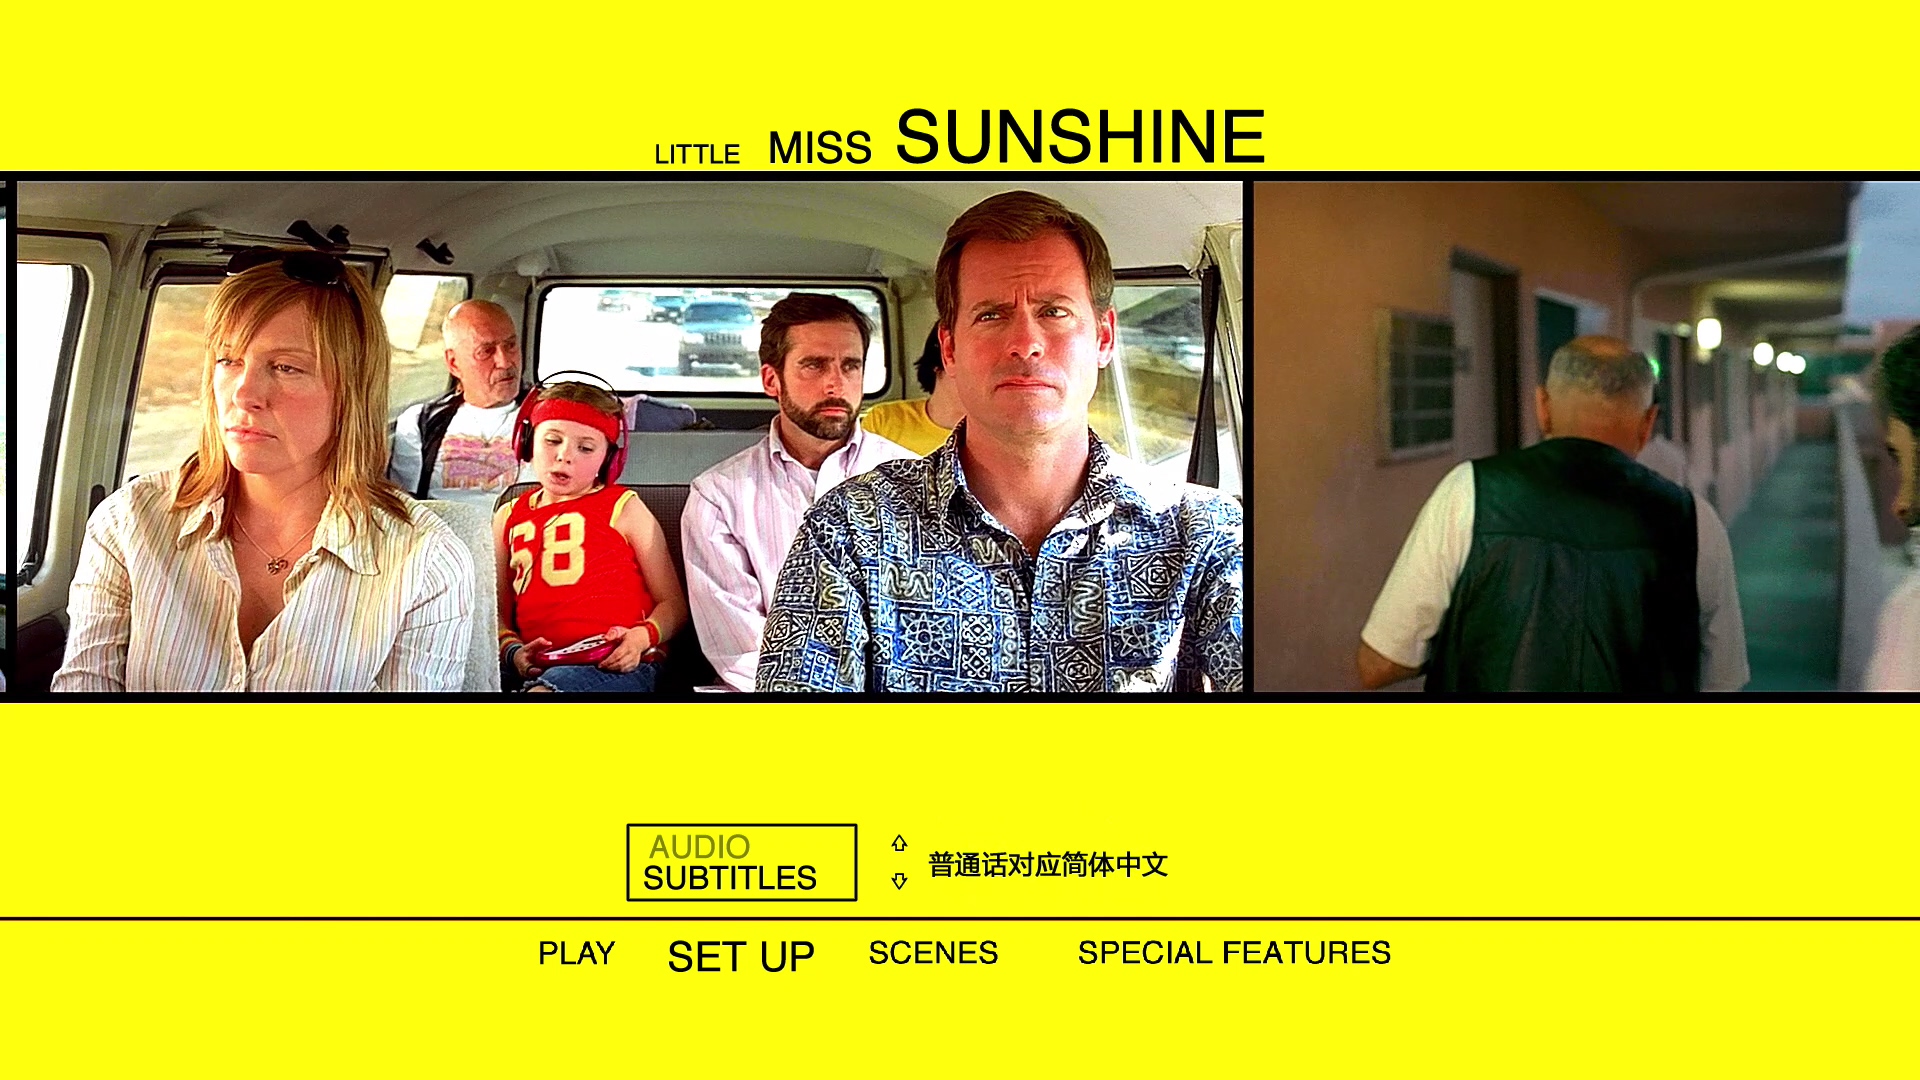 阳光小美女 [DIY上译/央视长影双国语+简繁R3双语简体.上译国配简体+菜单修改] Little Miss Sunshine 2006 1080p CEE Blu-ray AVC DTS-HD MA 5.1 DIY-Chinagear@HDSky    [35.27 GB ]-4.jpg